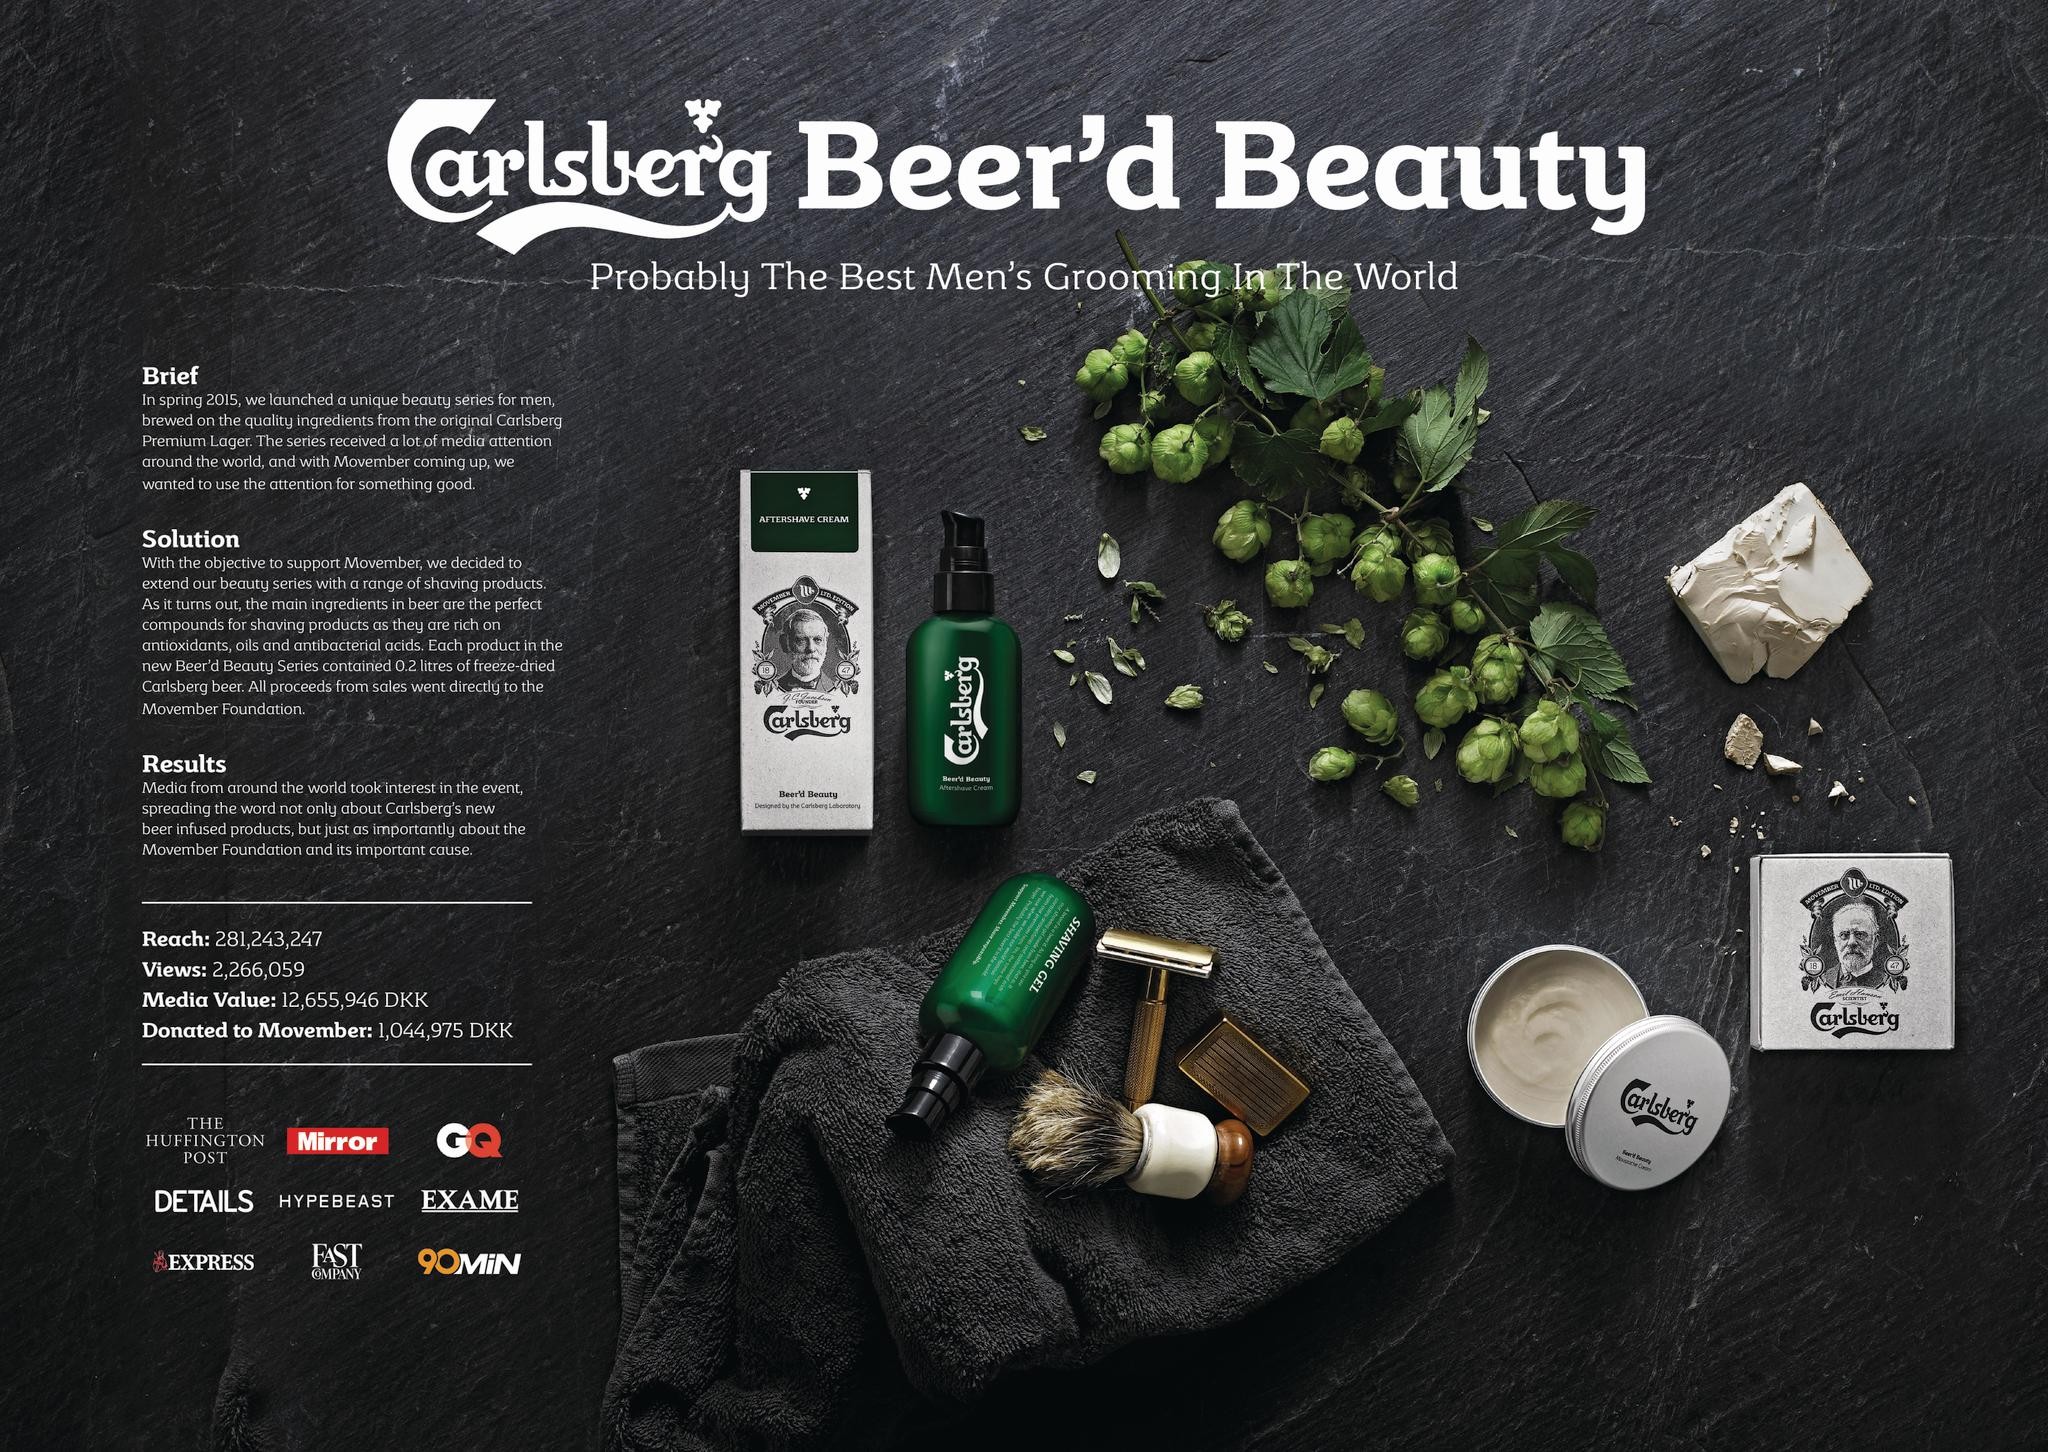 Carlsberg Beer'd Beauty